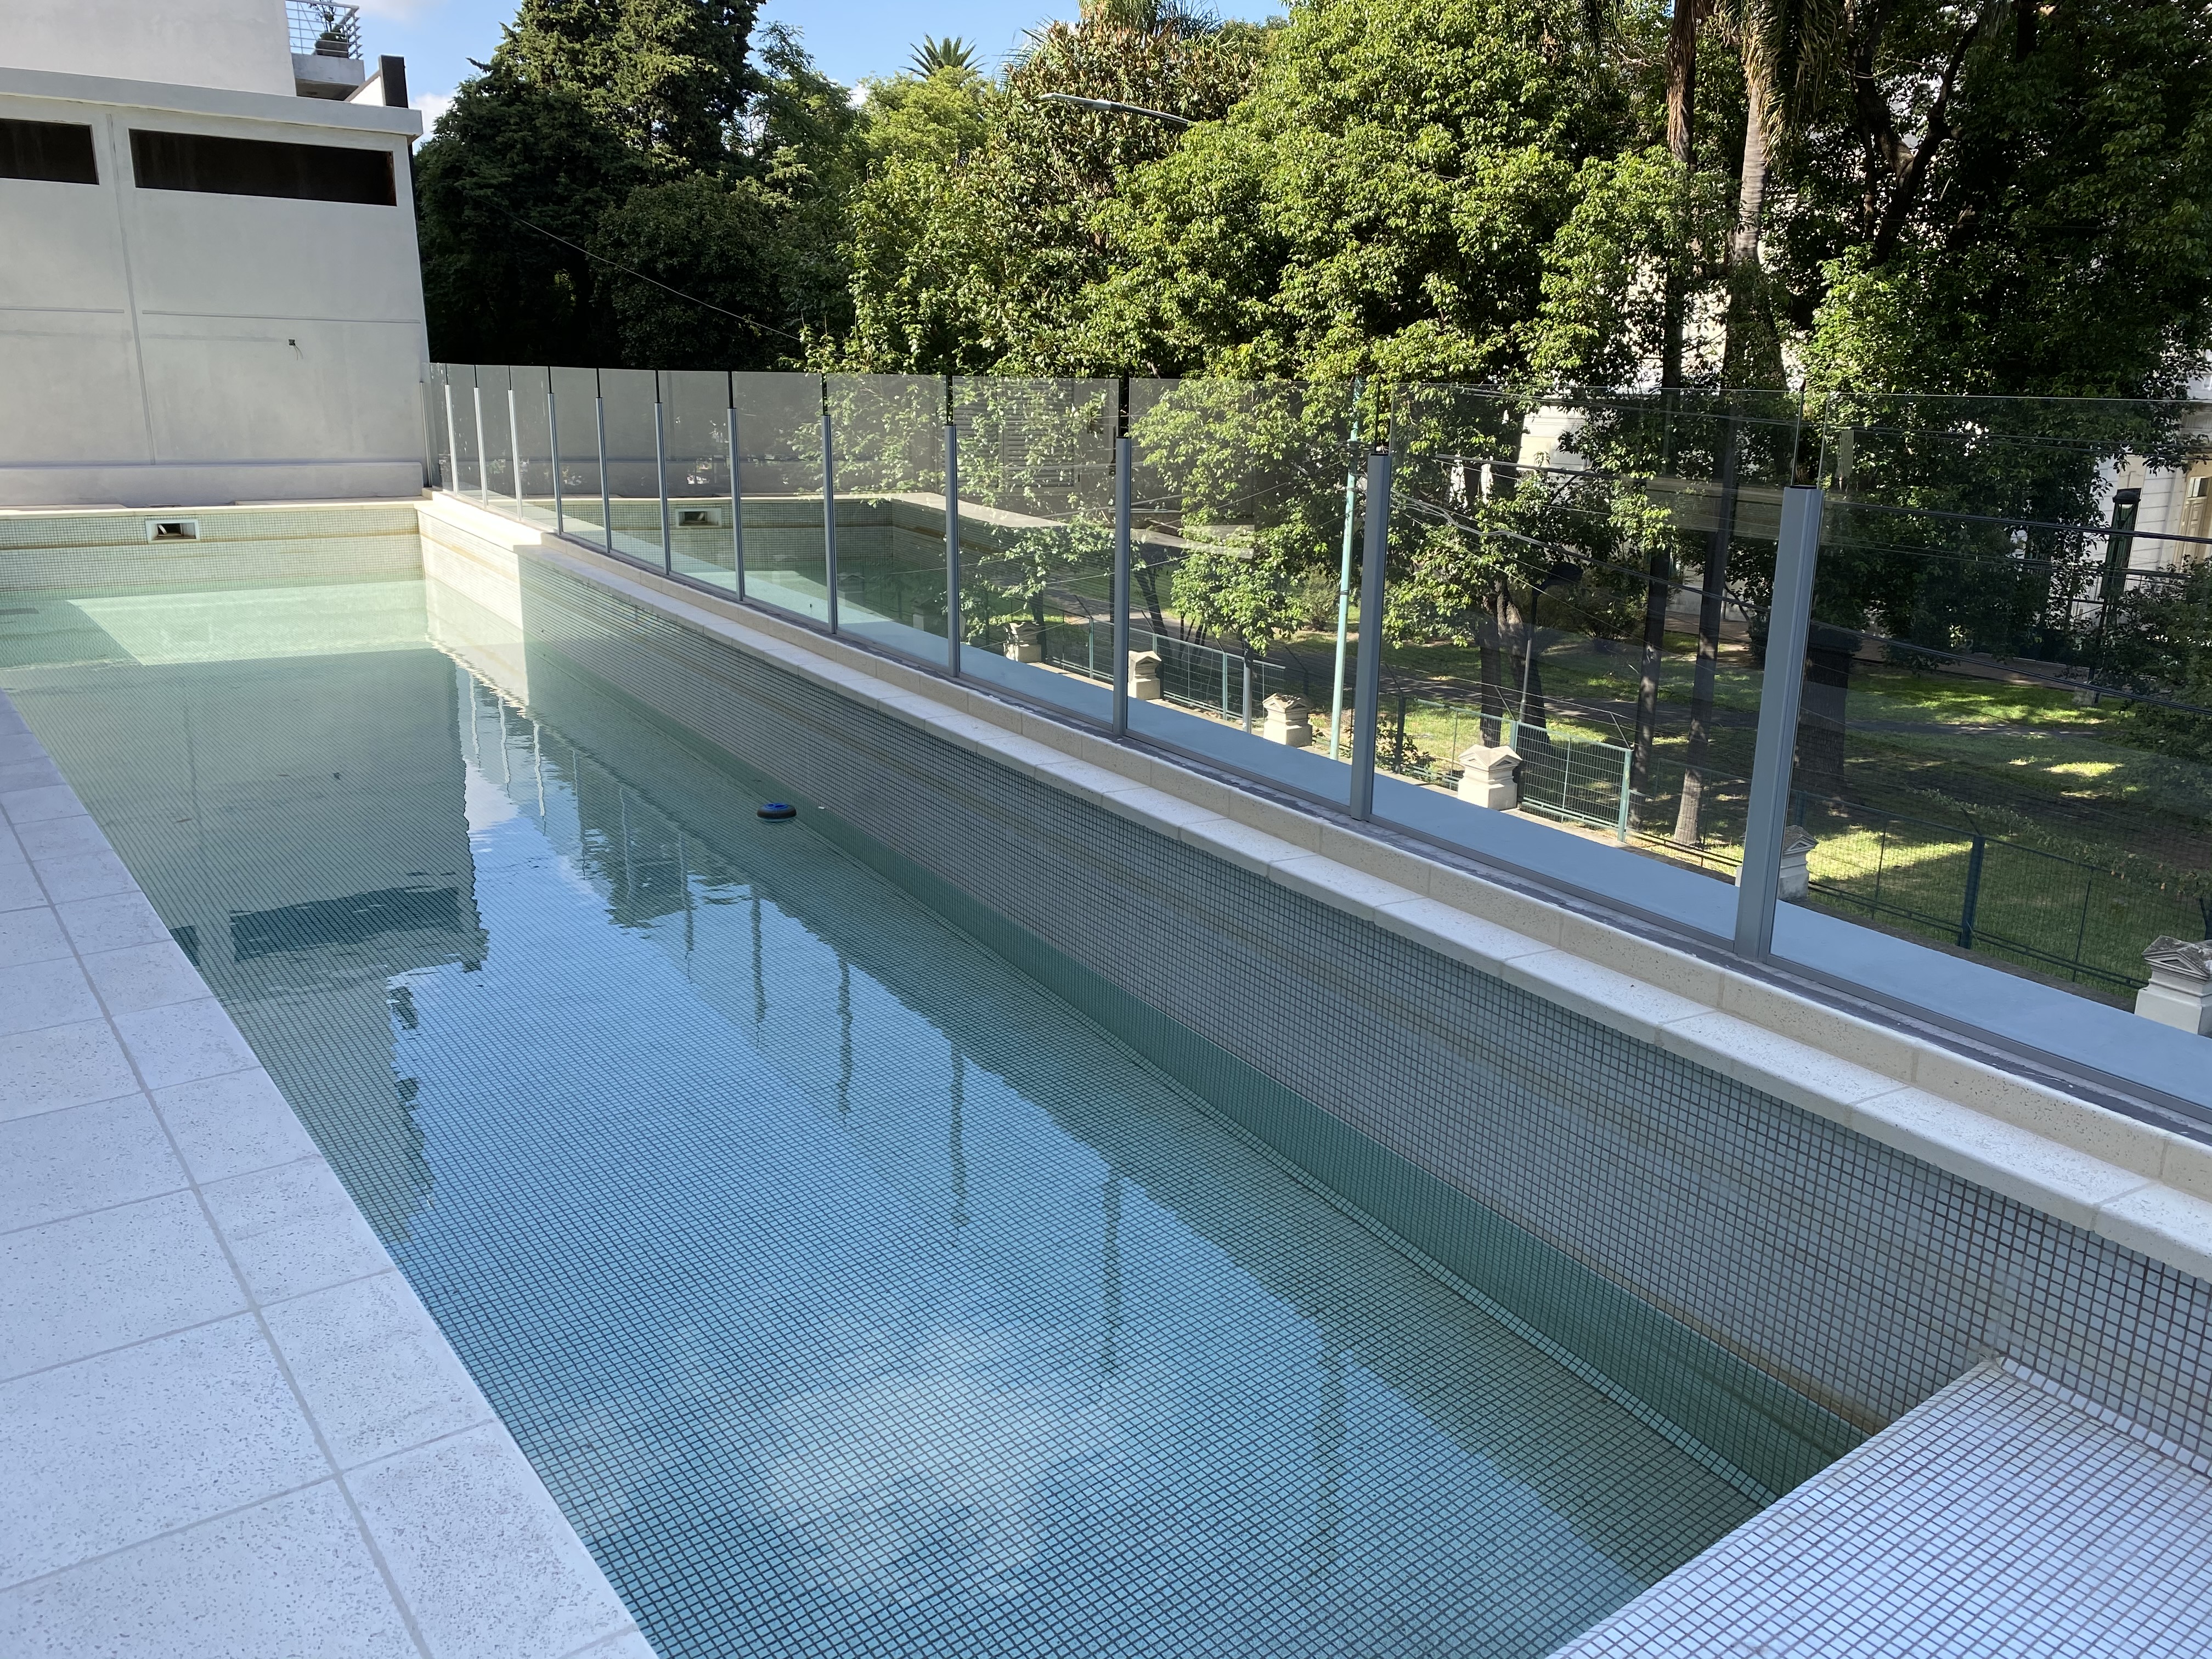 La piscina, entre los amenities más solicitados, pero que también por su mantenimiento hacen subir las expensas